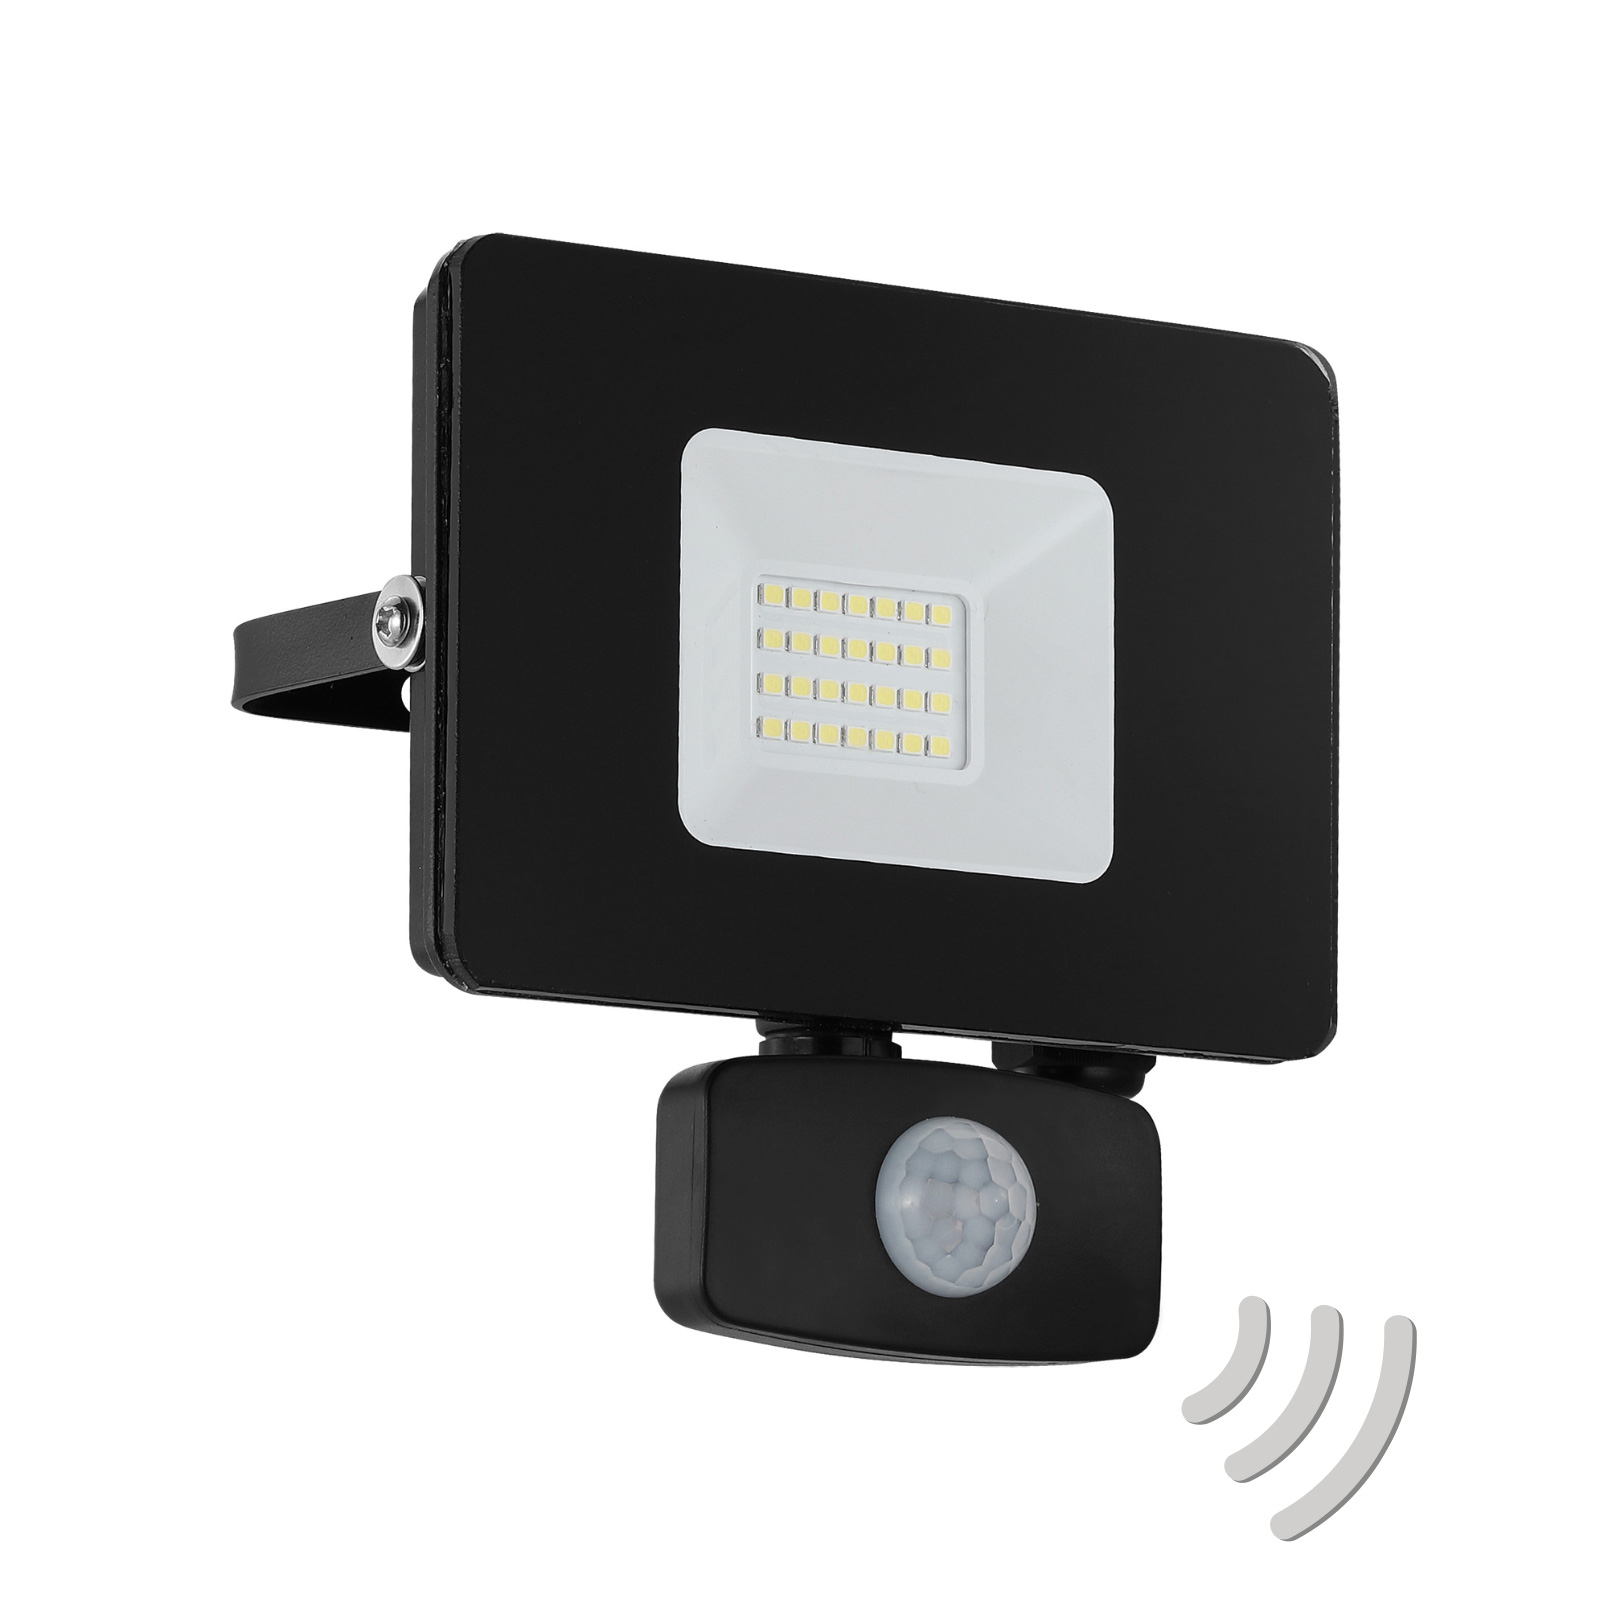 Utendørs LED-spot Faedo 3 med sensor, svart, 20 W